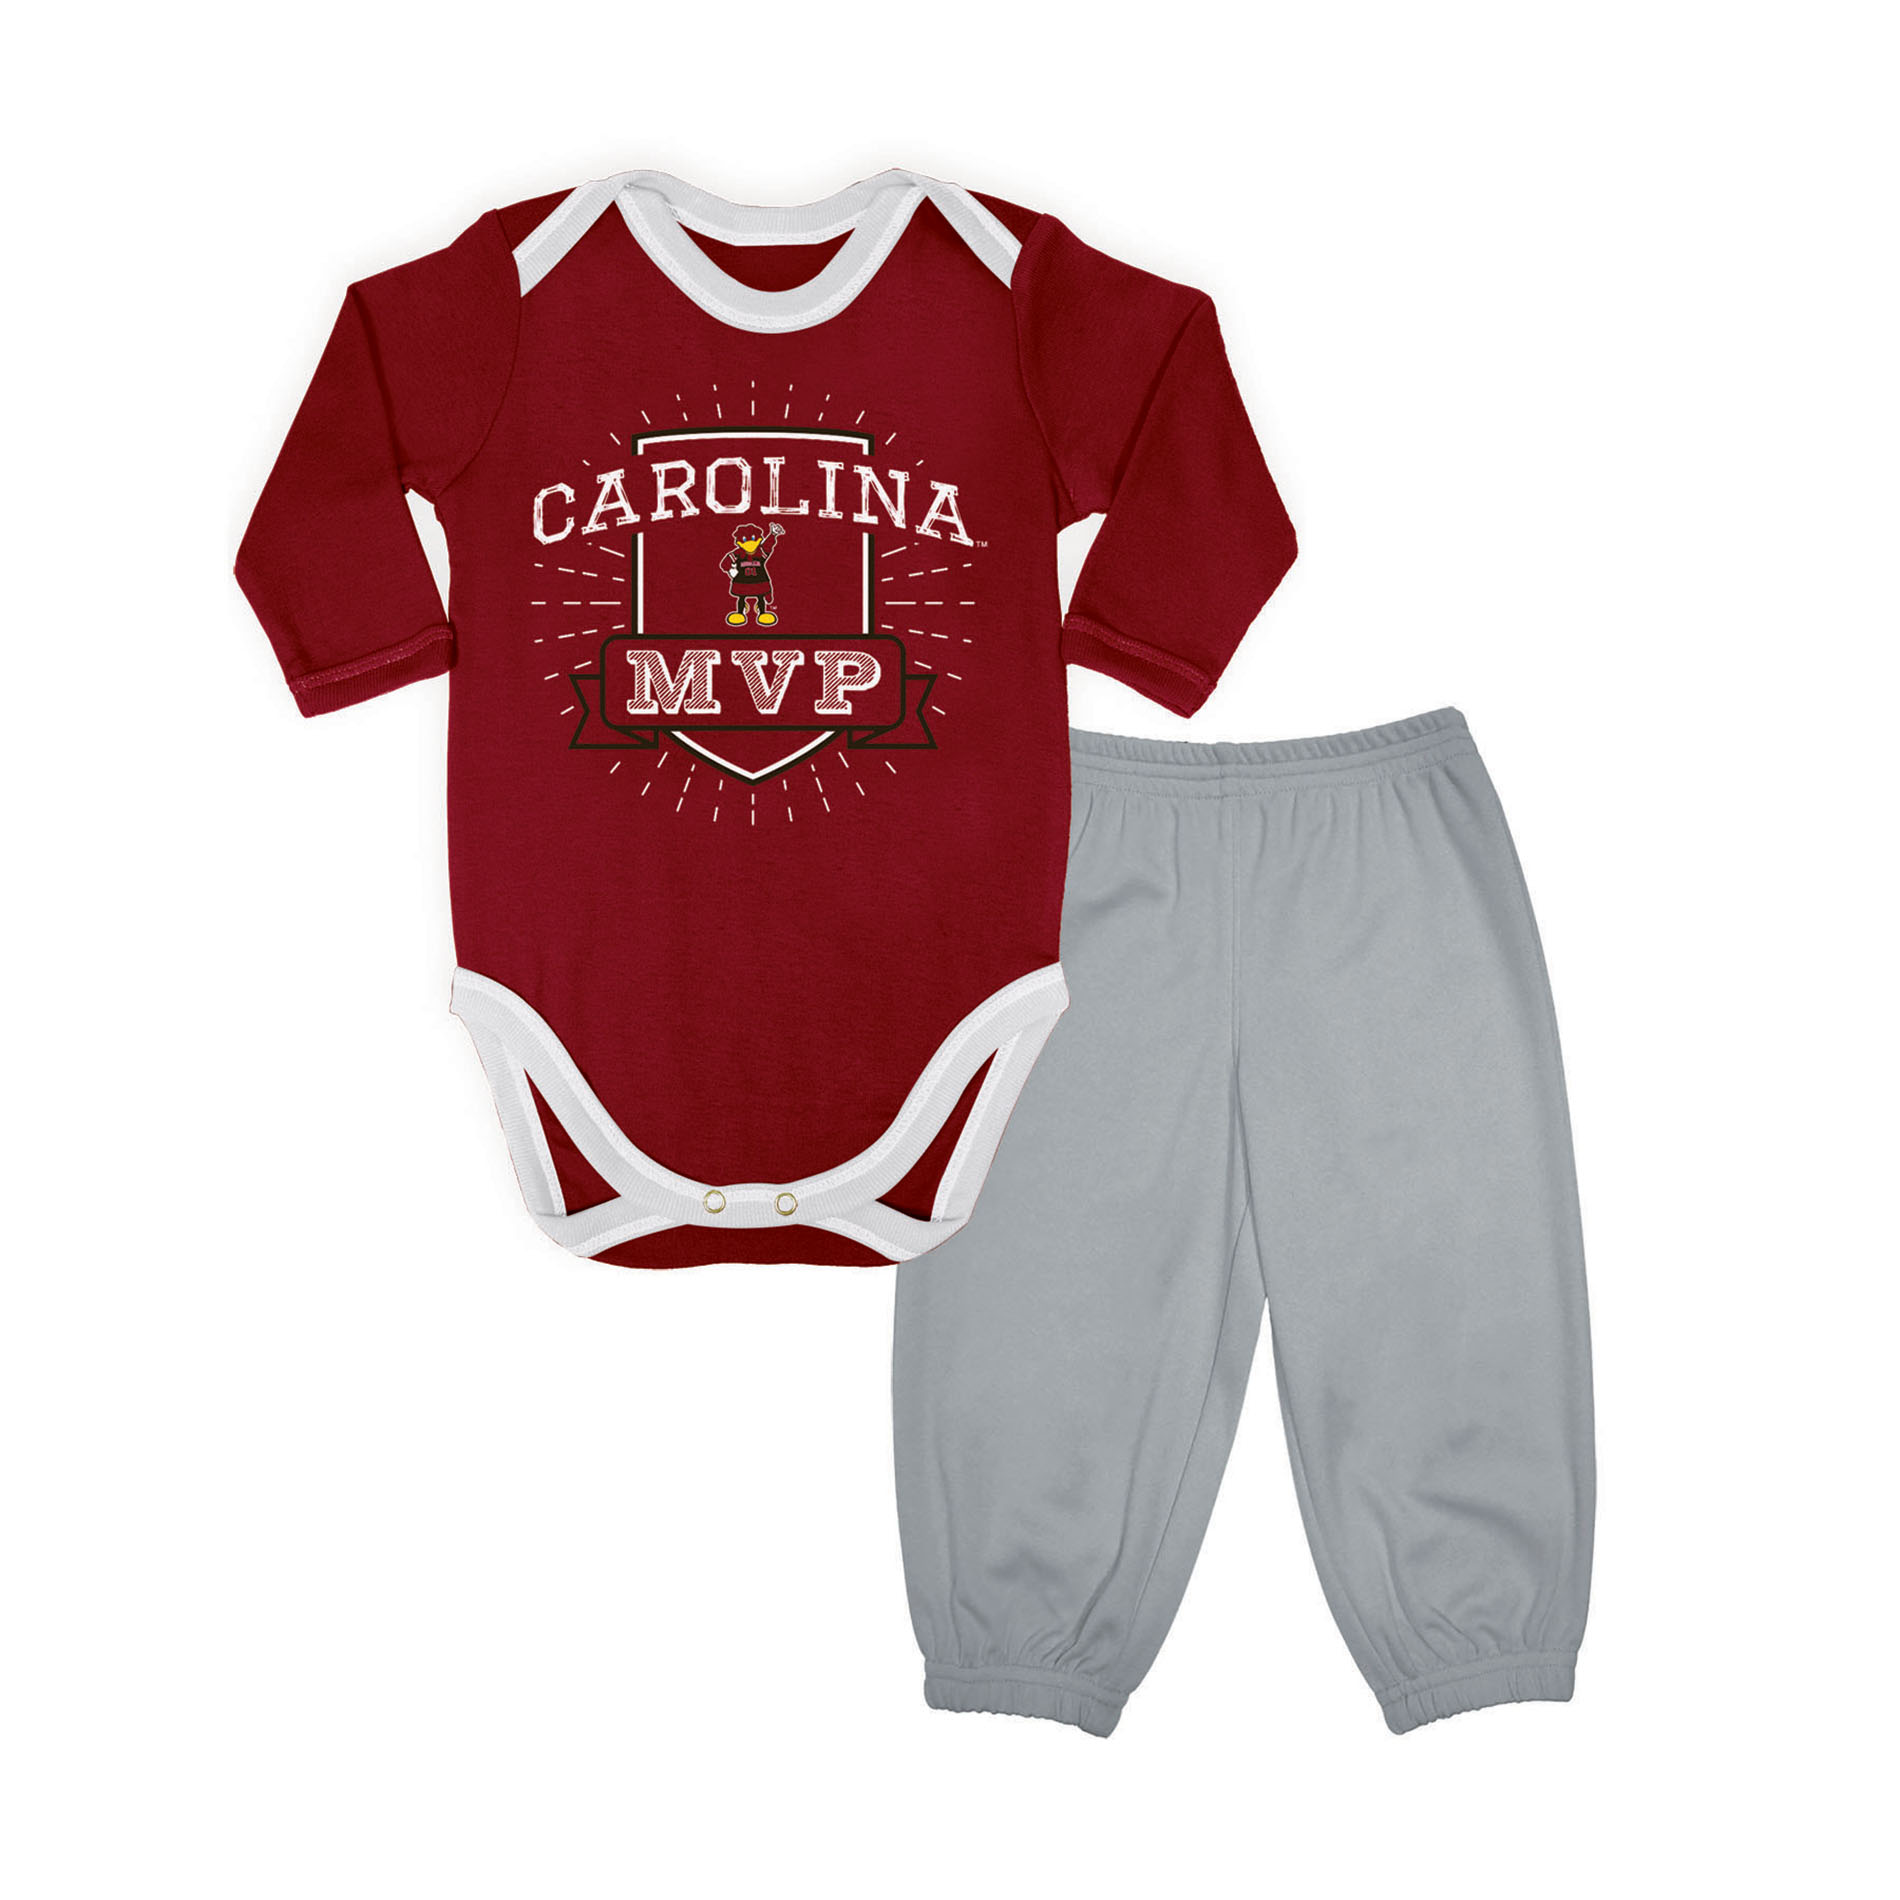 South Carolina Gamecock Baby Bodysuit and Cap